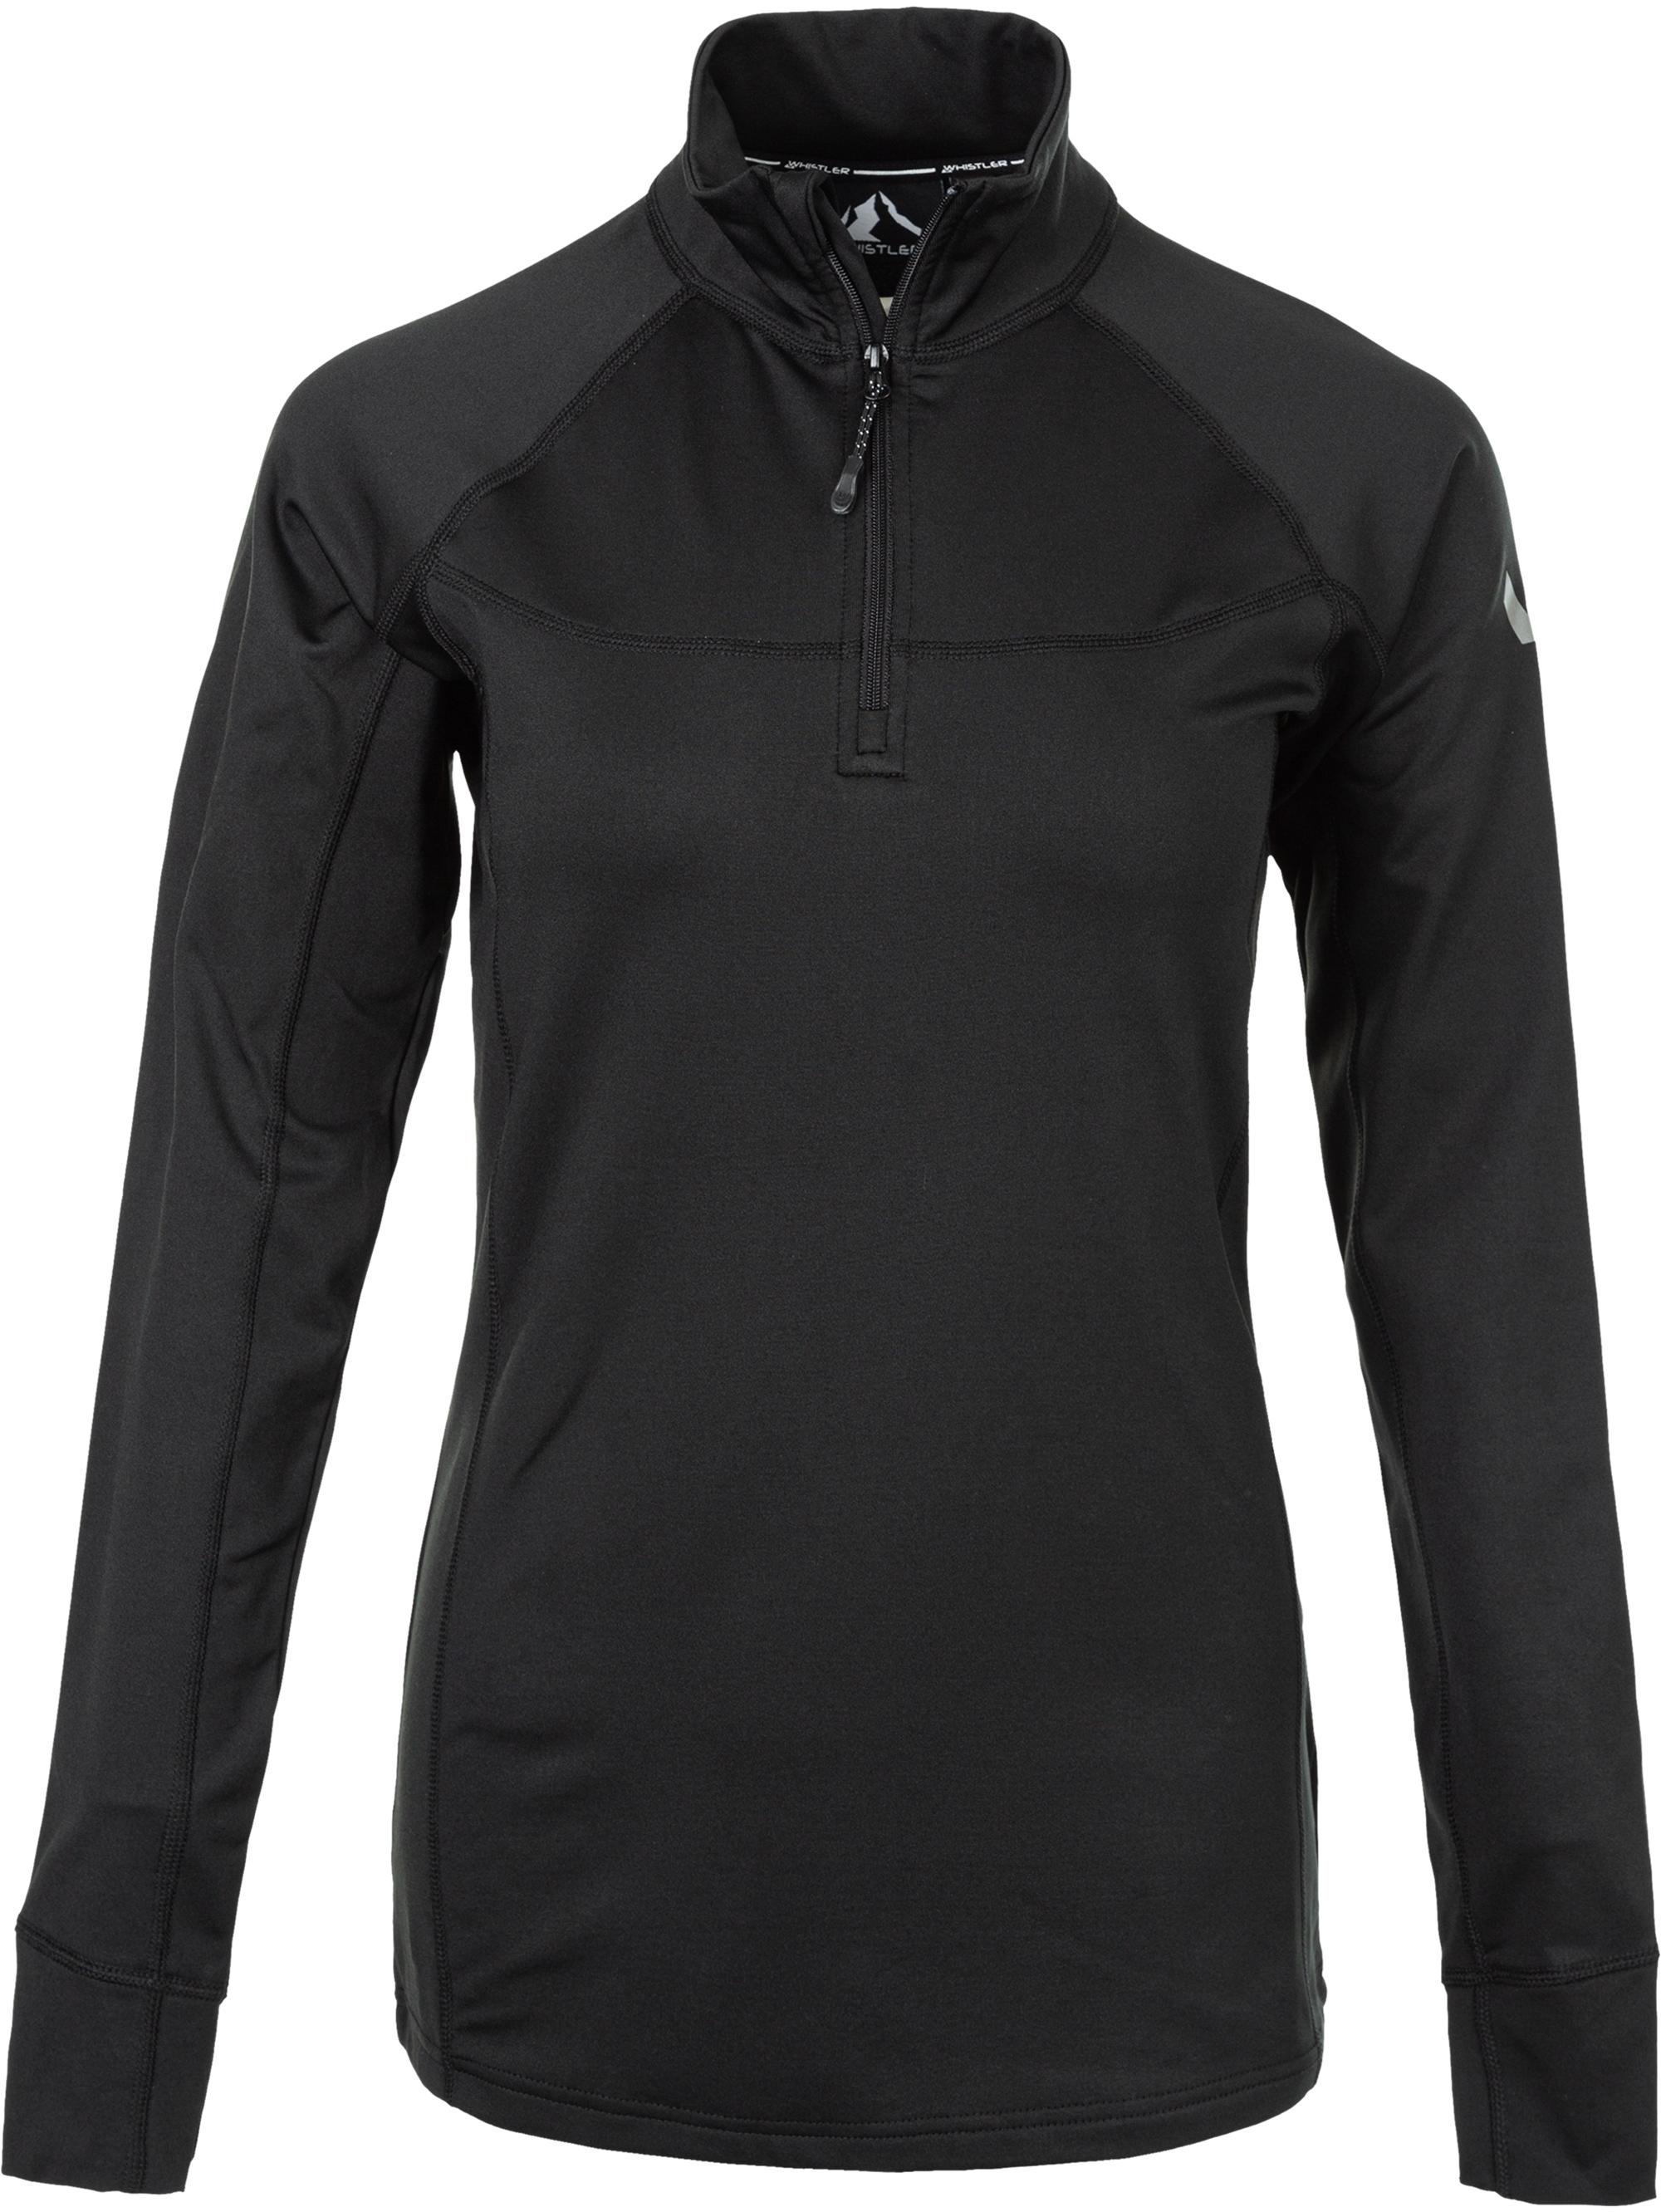 Shop 1001 im von SportScheck Skishirt Blume Online kaufen Damen Whistler Black